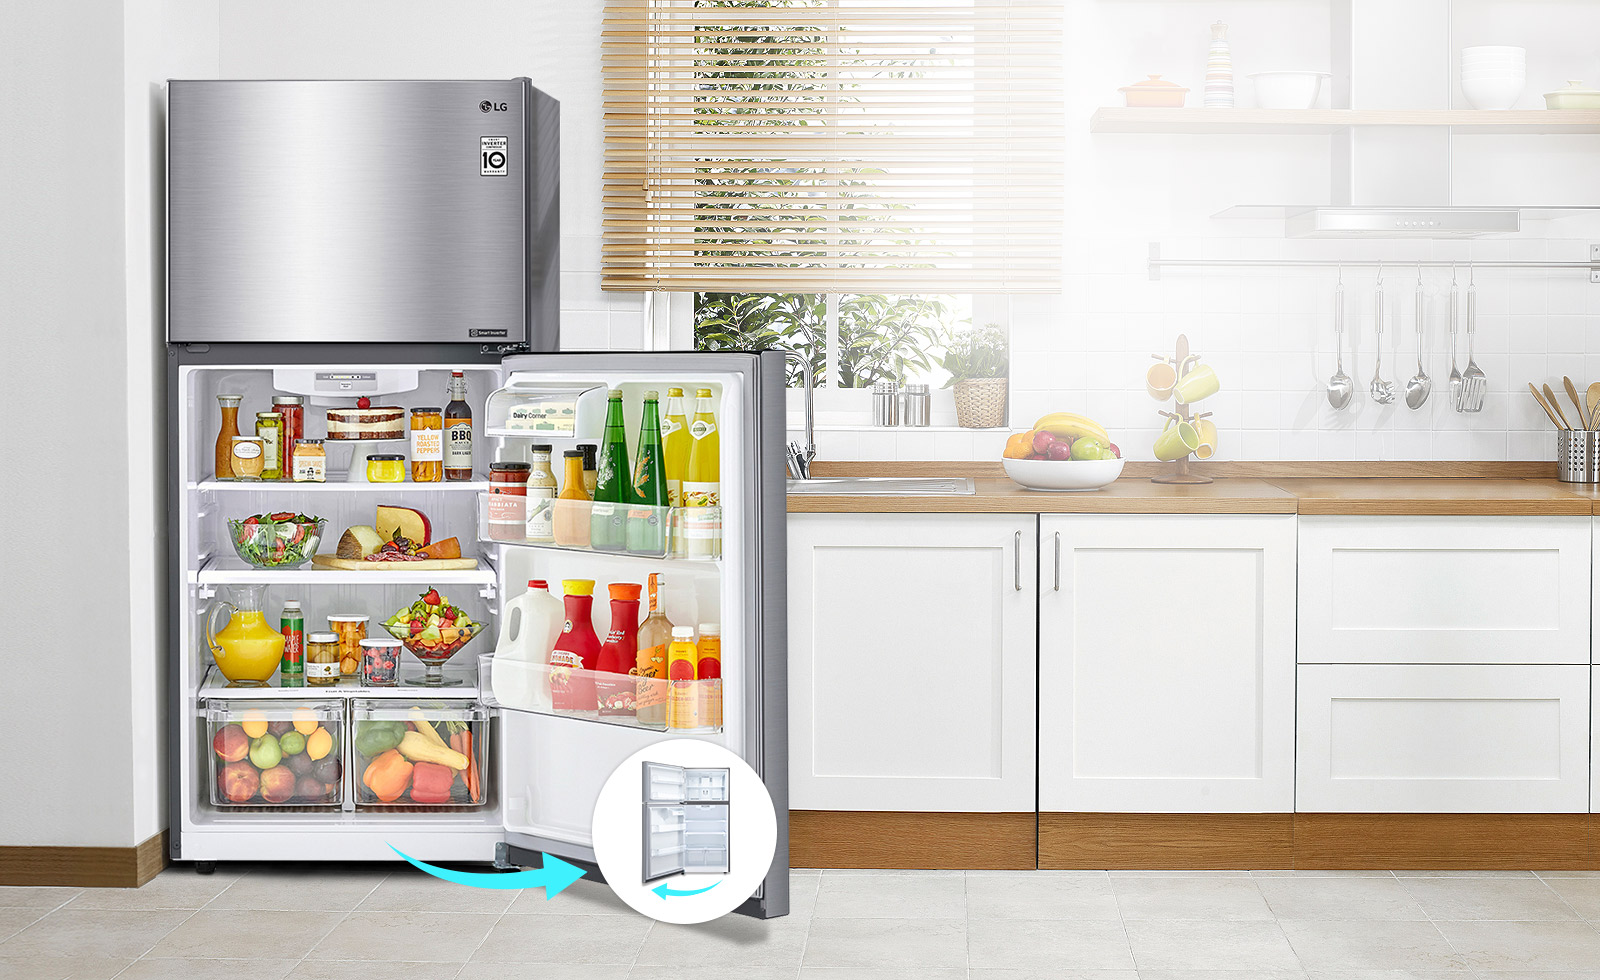 El refrigerador está en una cocina con una puerta que se abre a la derecha. Al lado del refrigerador hay un pequeño círculo con una imagen del mismo refrigerador con una puerta que se abre a la izquierda, para indicar una puerta reversible.